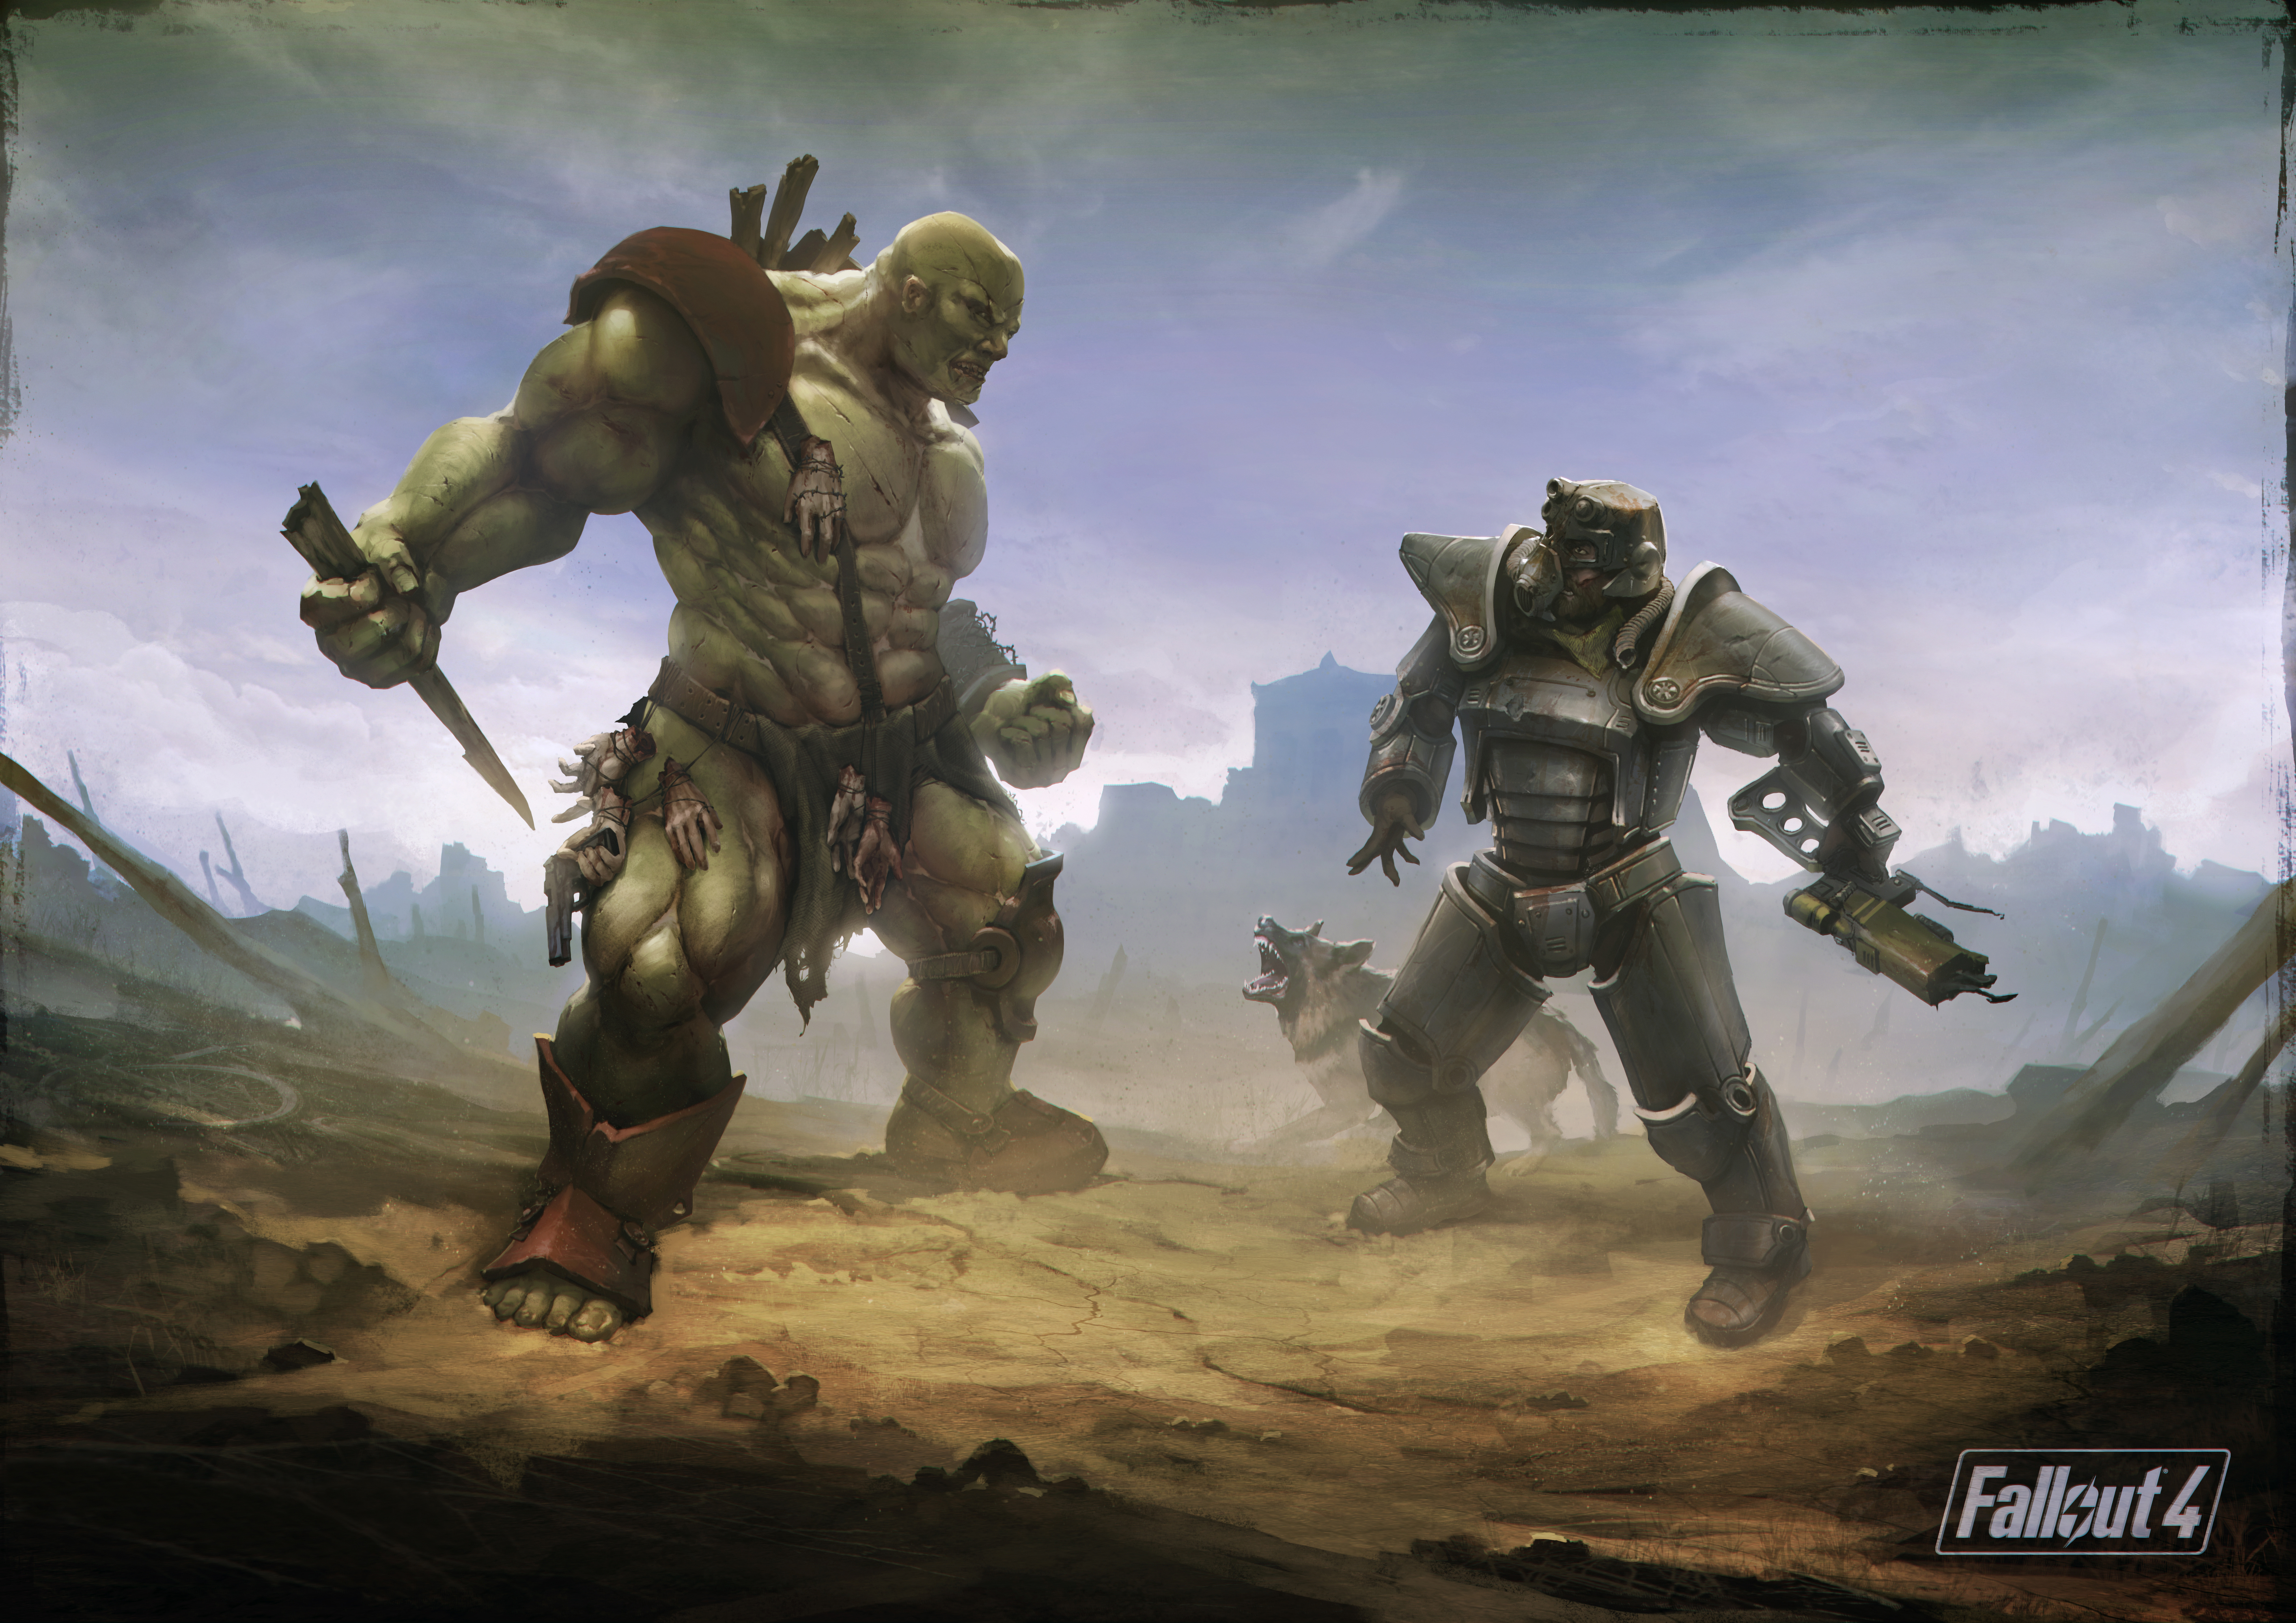 壁紙 5658x4000 フォールアウト モンスター Fallout 4 Super Mutant Brotherhood Of Steel Art シェパード犬 鎧 ゲーム ファンタジー 動物 ダウンロード 写真